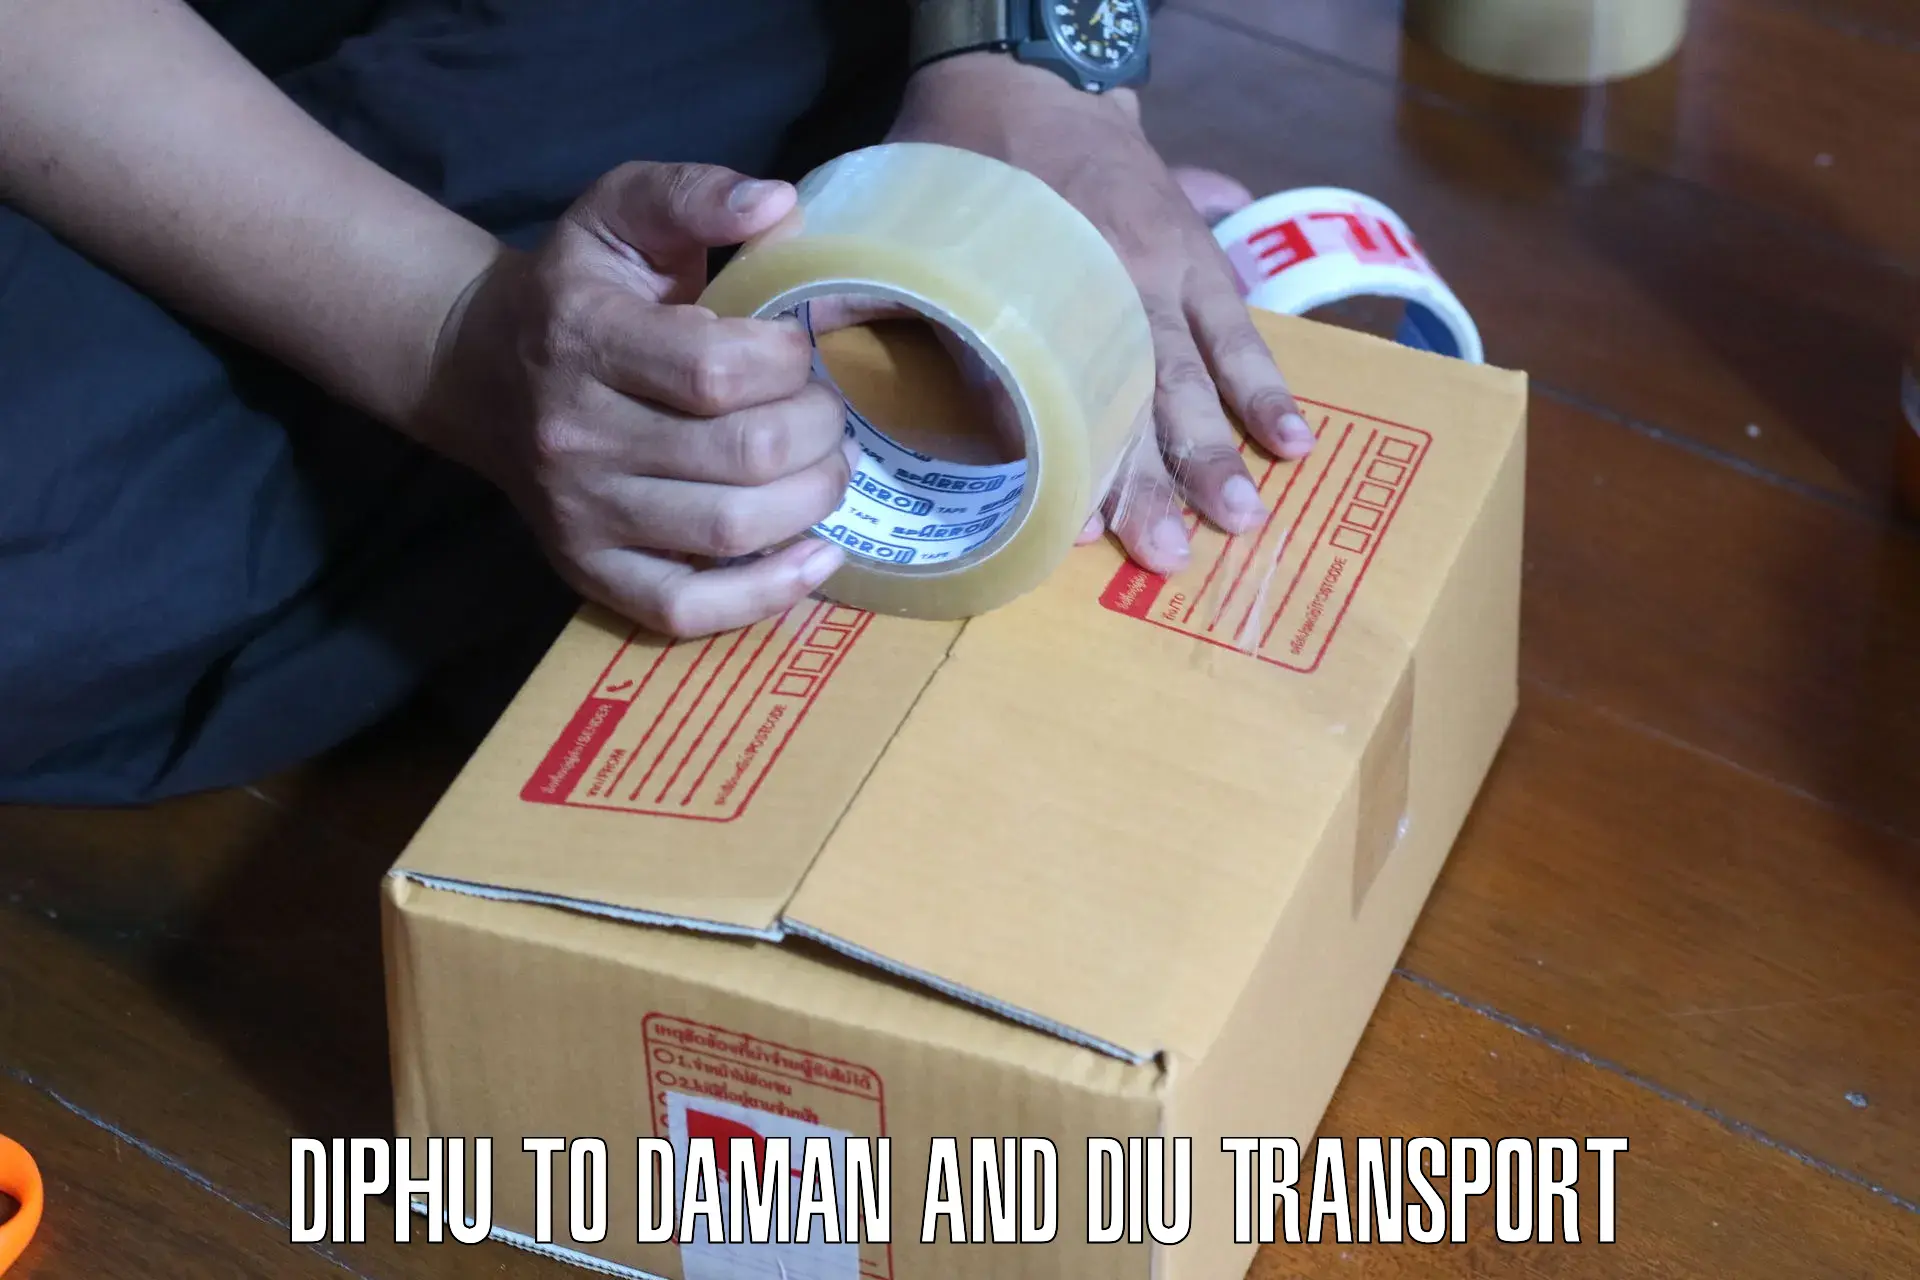 Two wheeler transport services Diphu to Daman